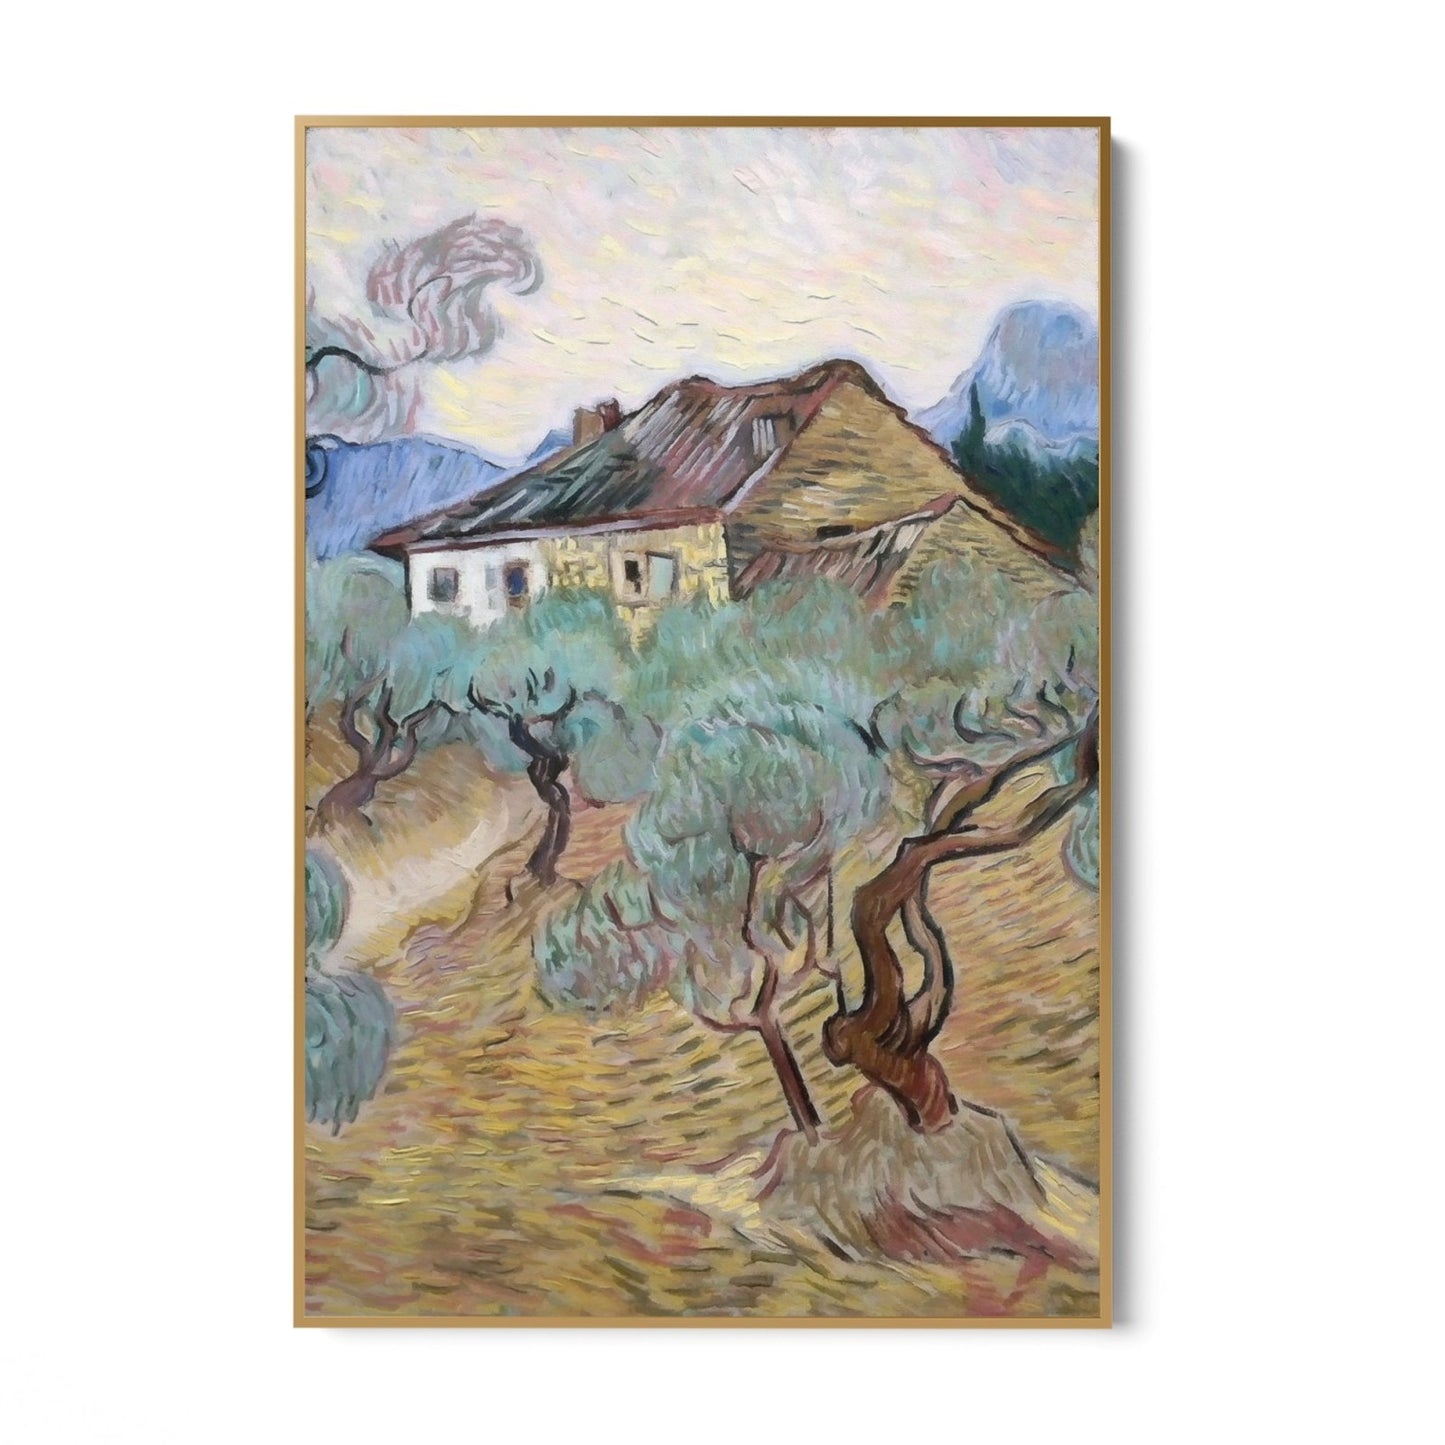 Cabaña blanca entre olivos, Vincent Van Gogh